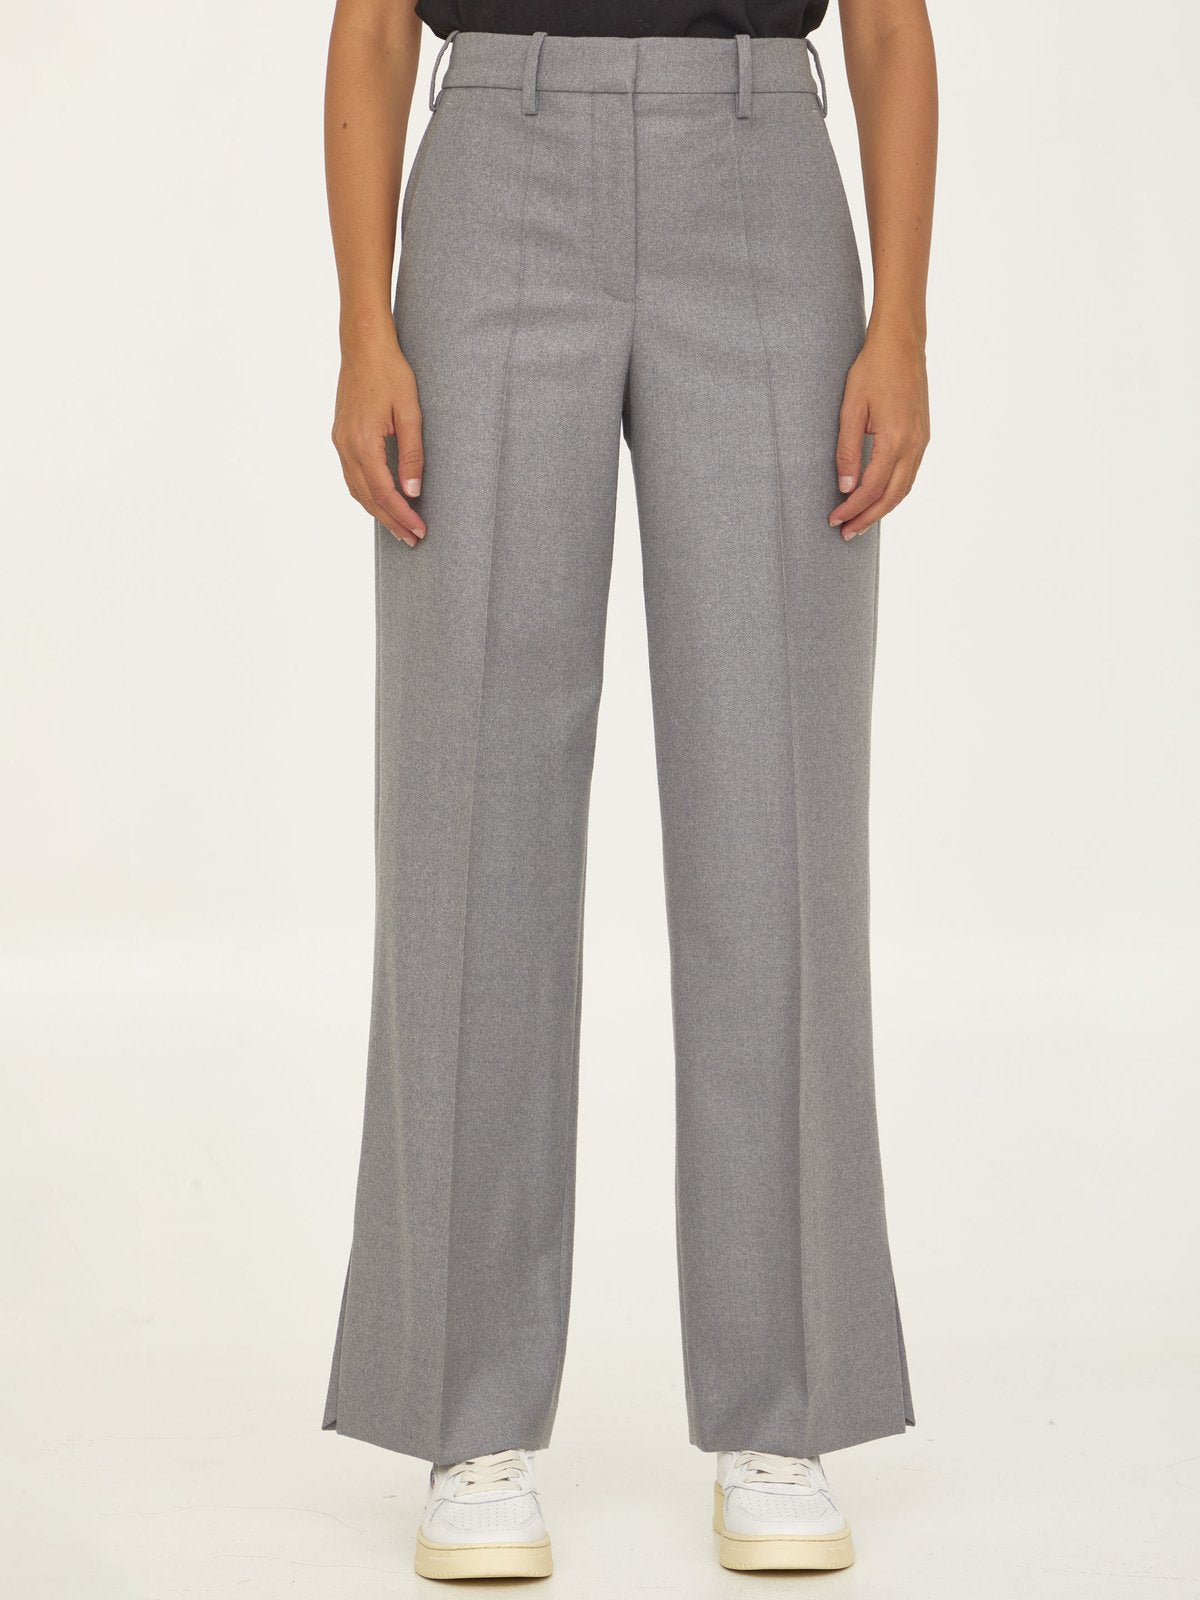 Loewe High-Waist Tailored Trousers